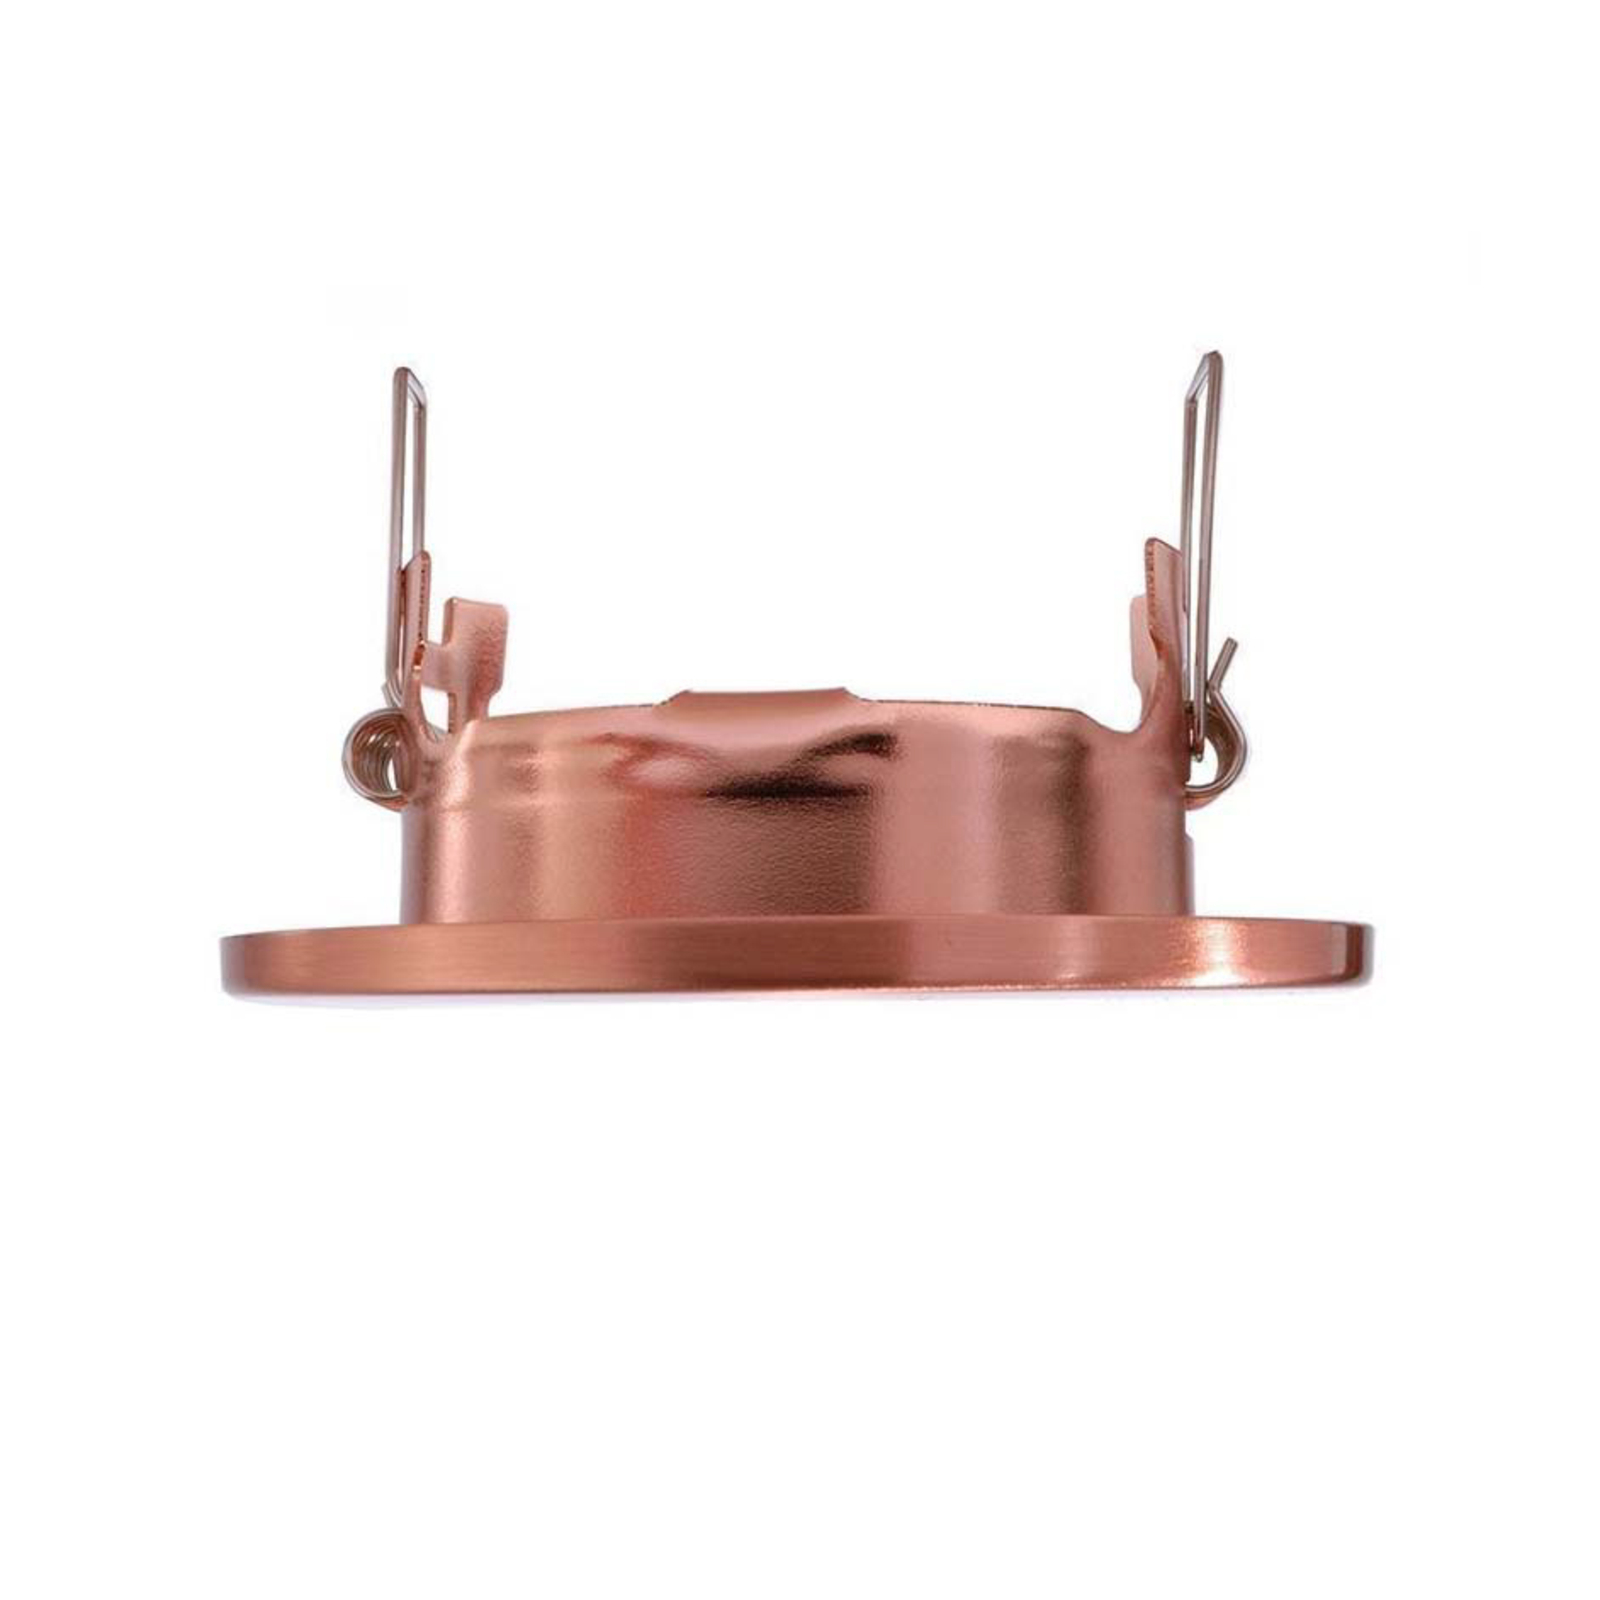 Pivotable low-volt recessed light 68, copper